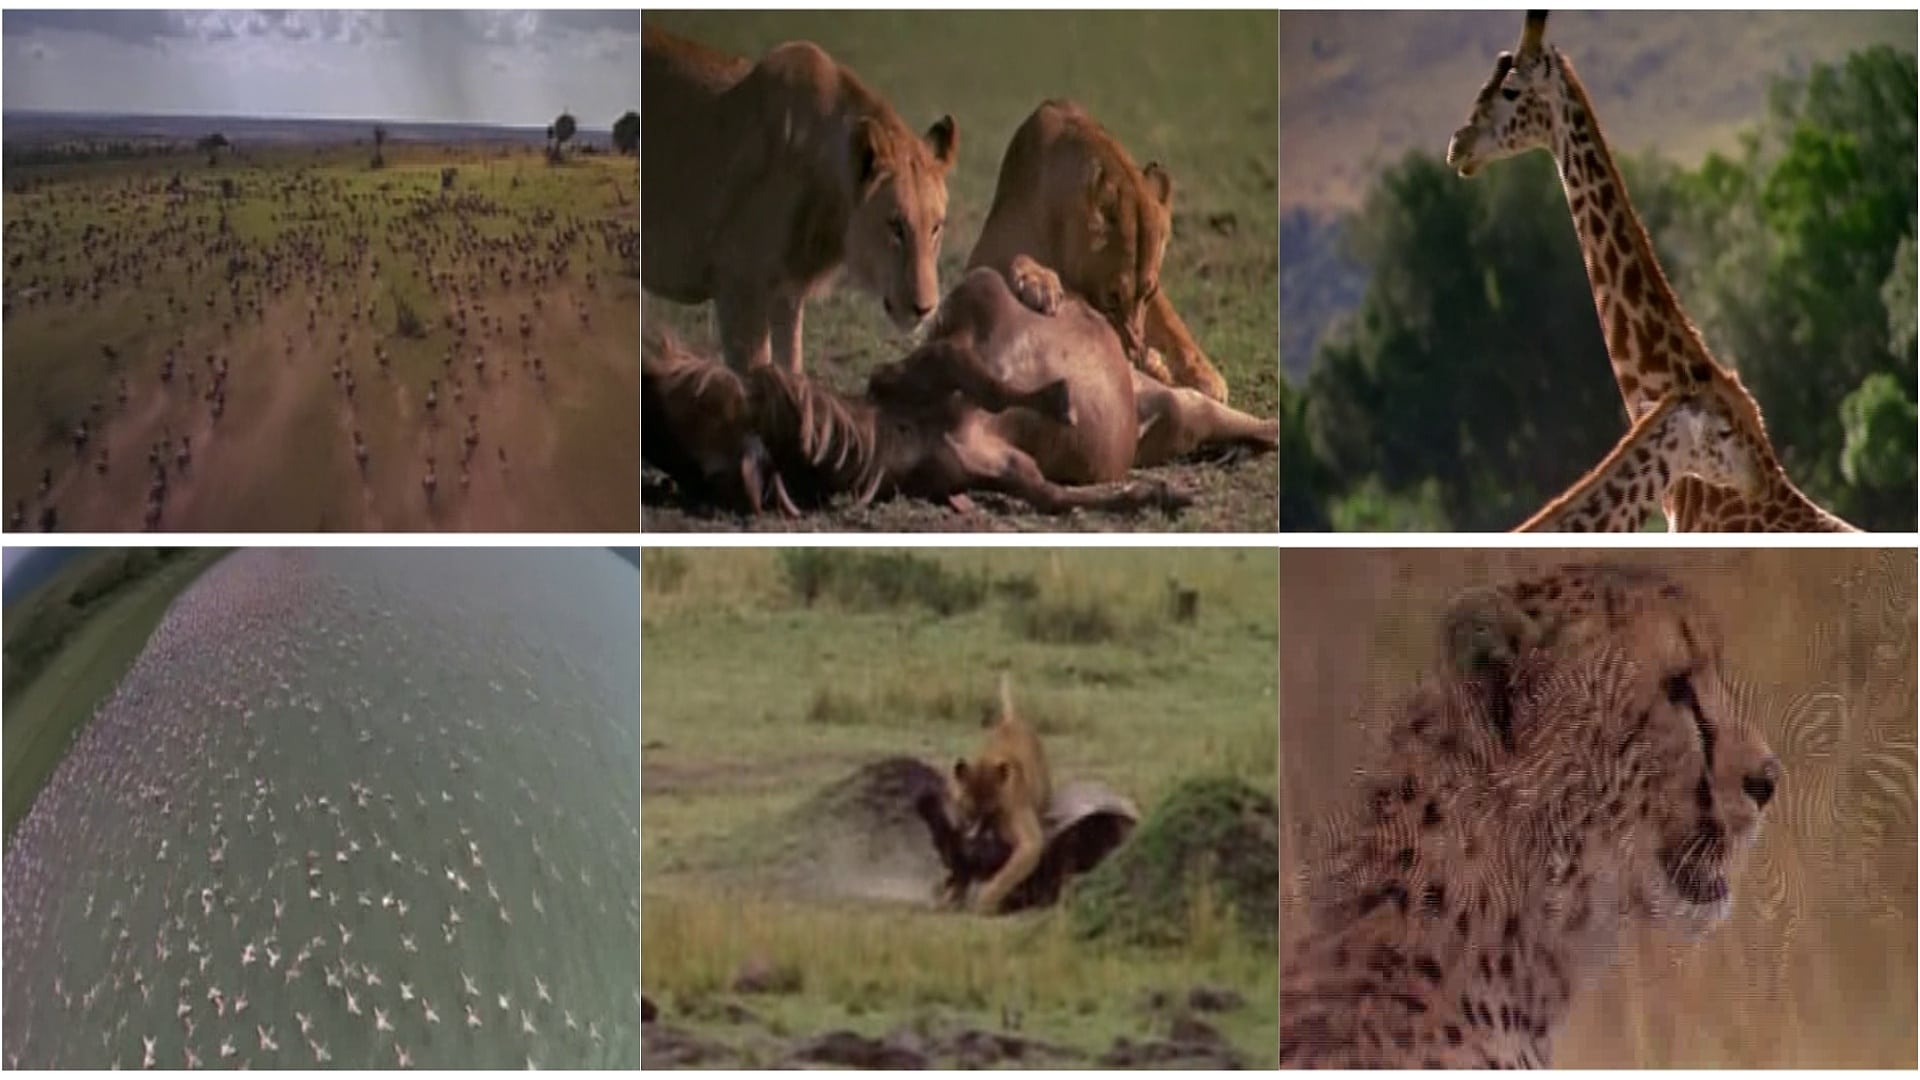 Africa: The Serengeti (1994)